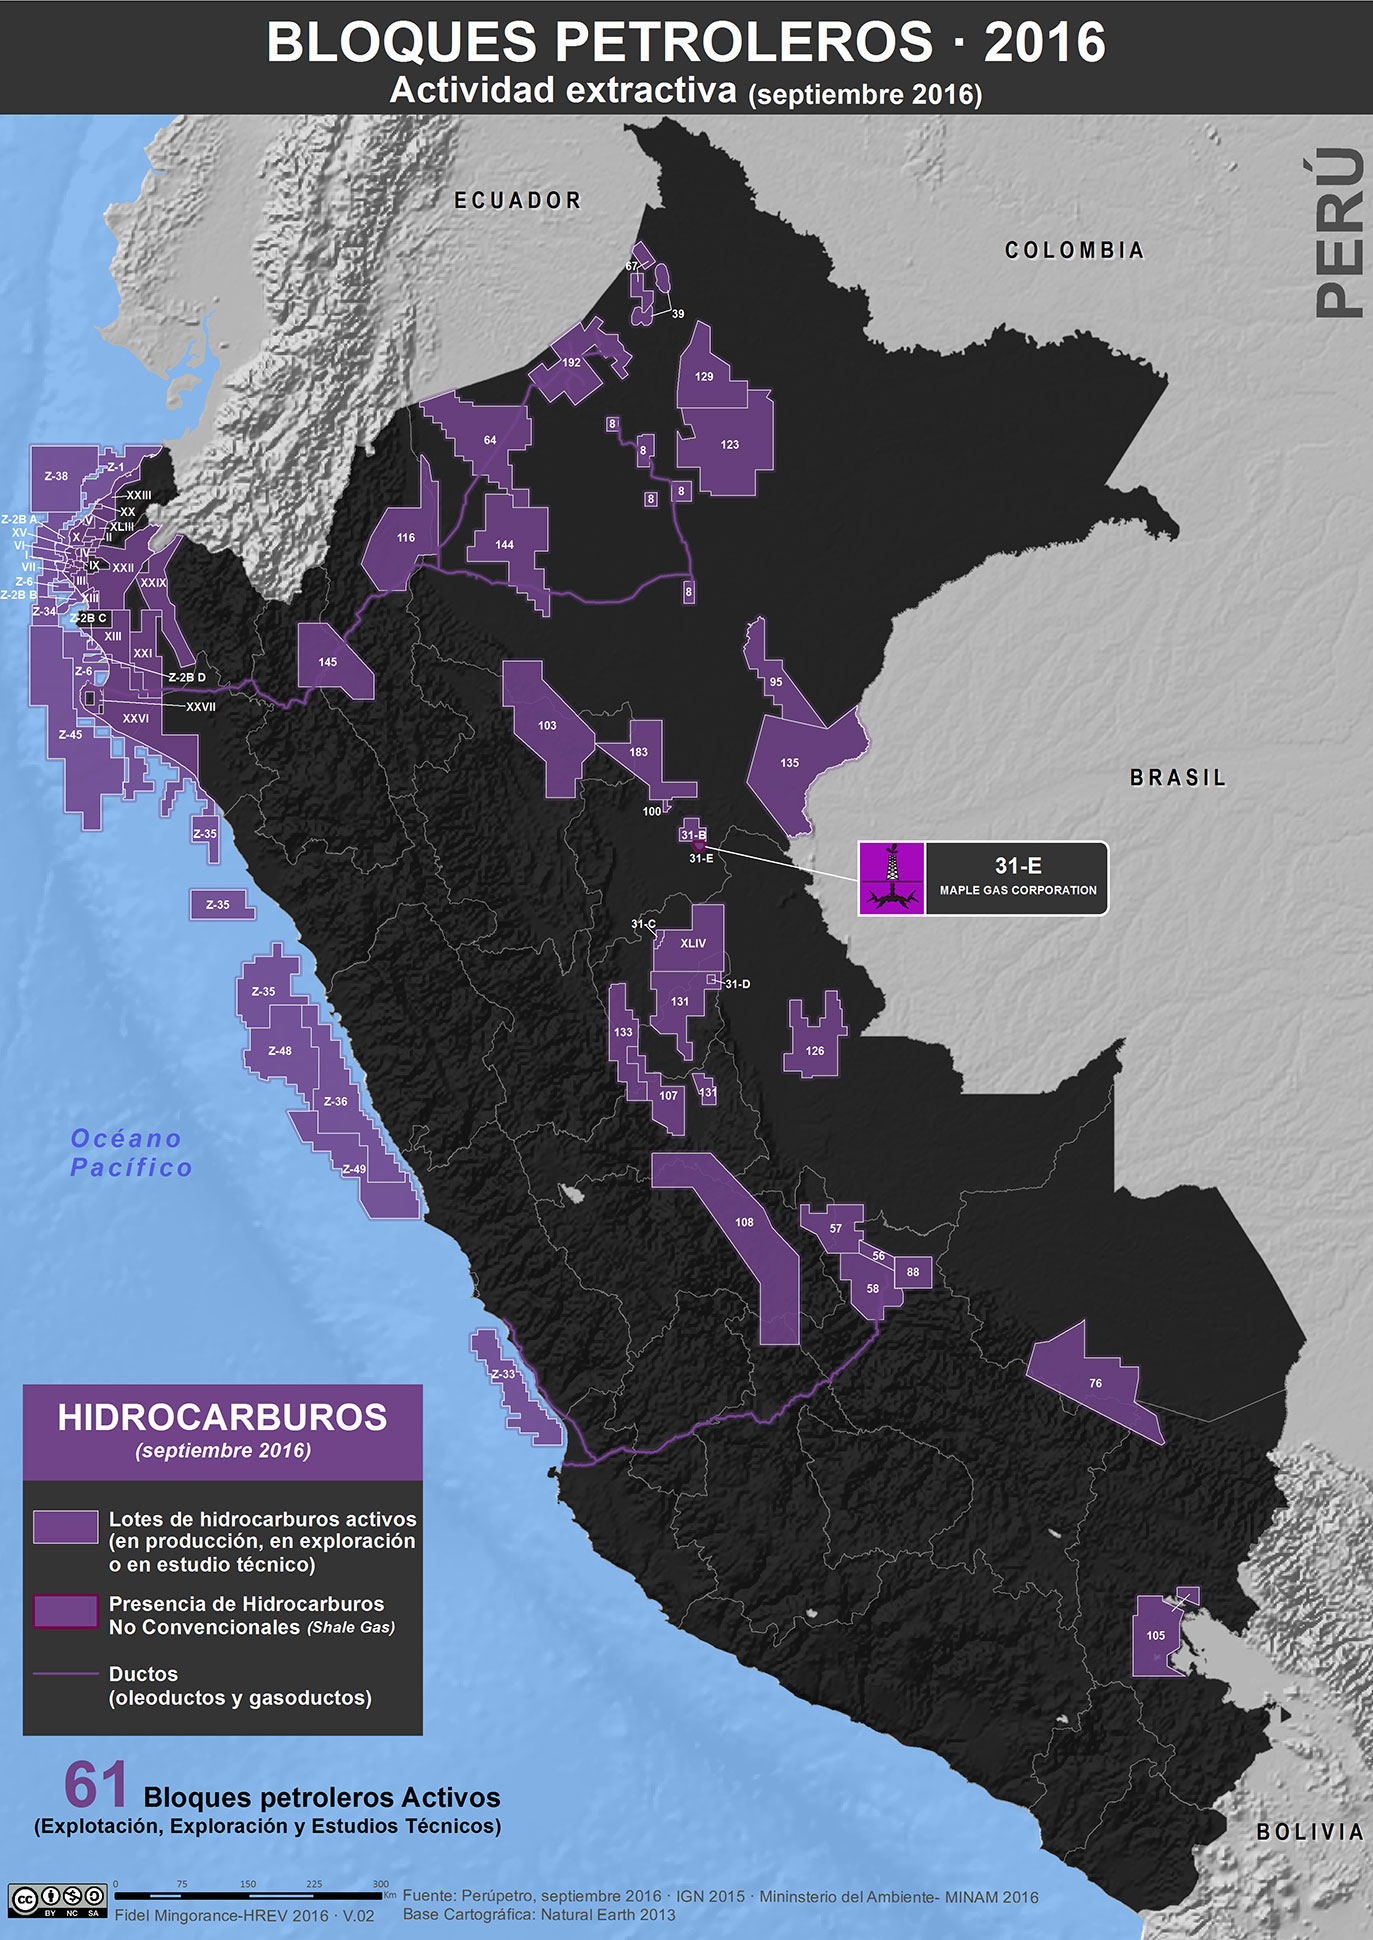 Lotes de hidrocarburos en el Perú